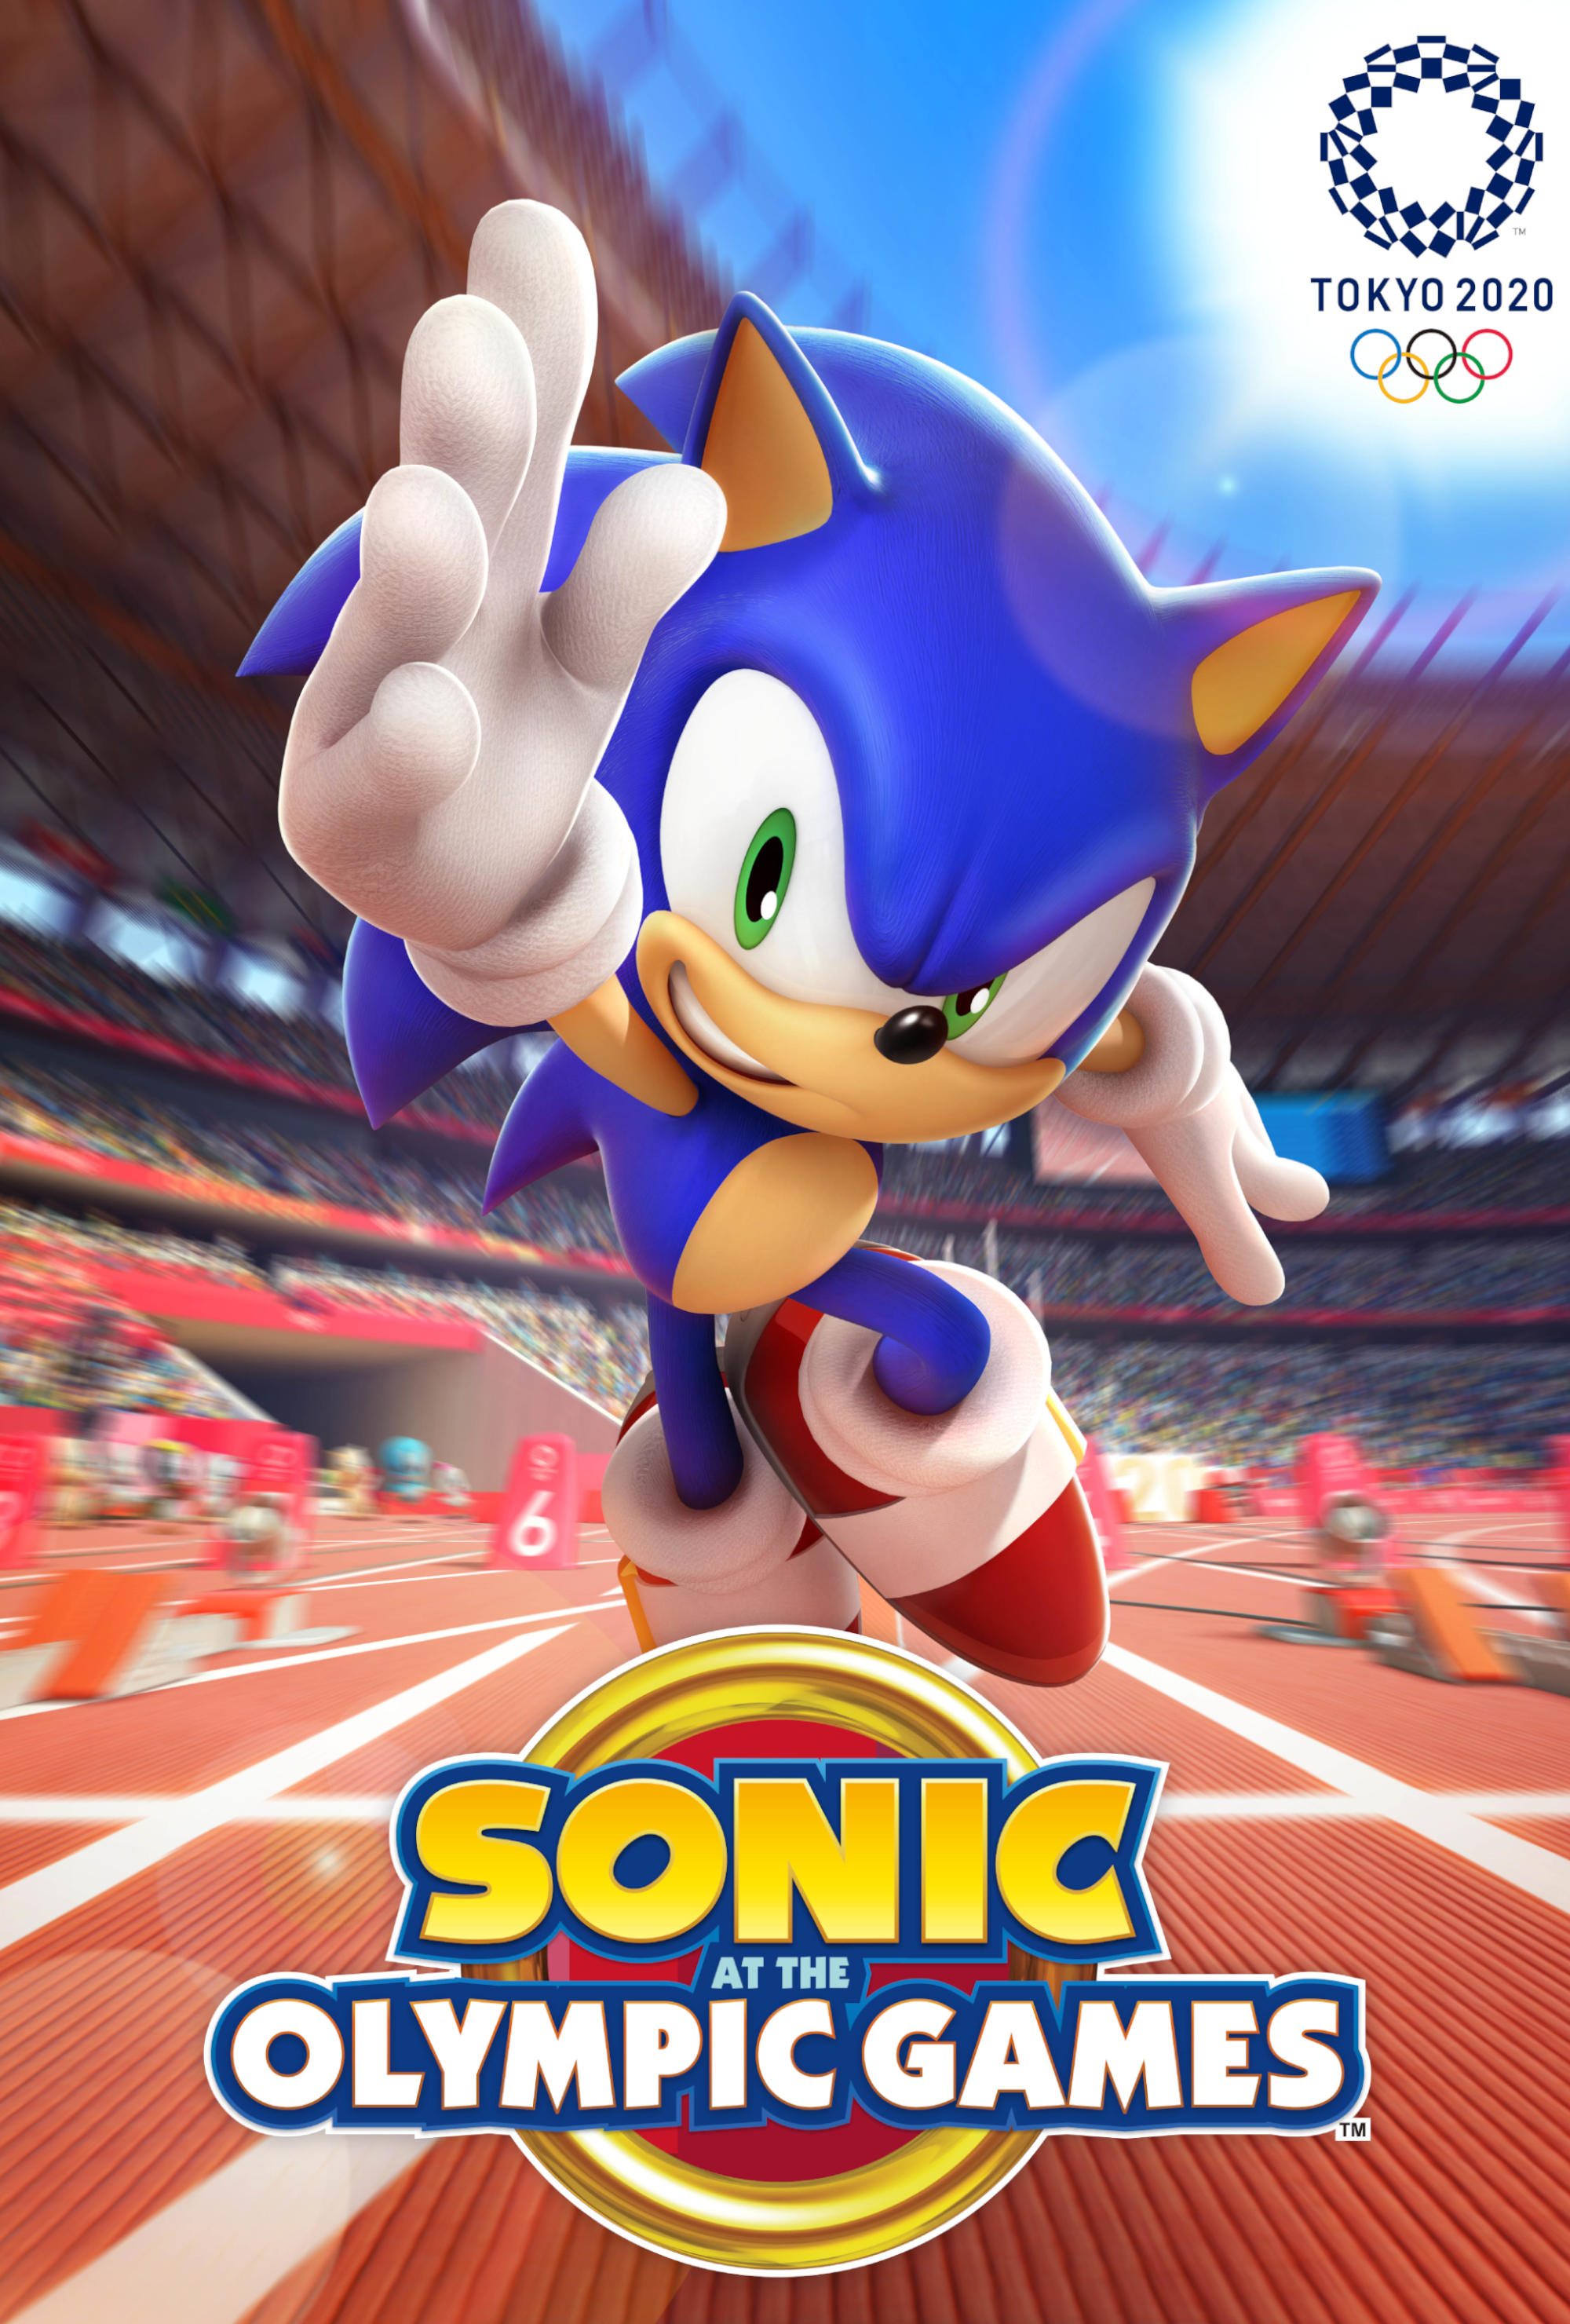 Sonic nos Jogos Olímpicos de Tóquio 2020 - Trailer de lançamento em PTBR 